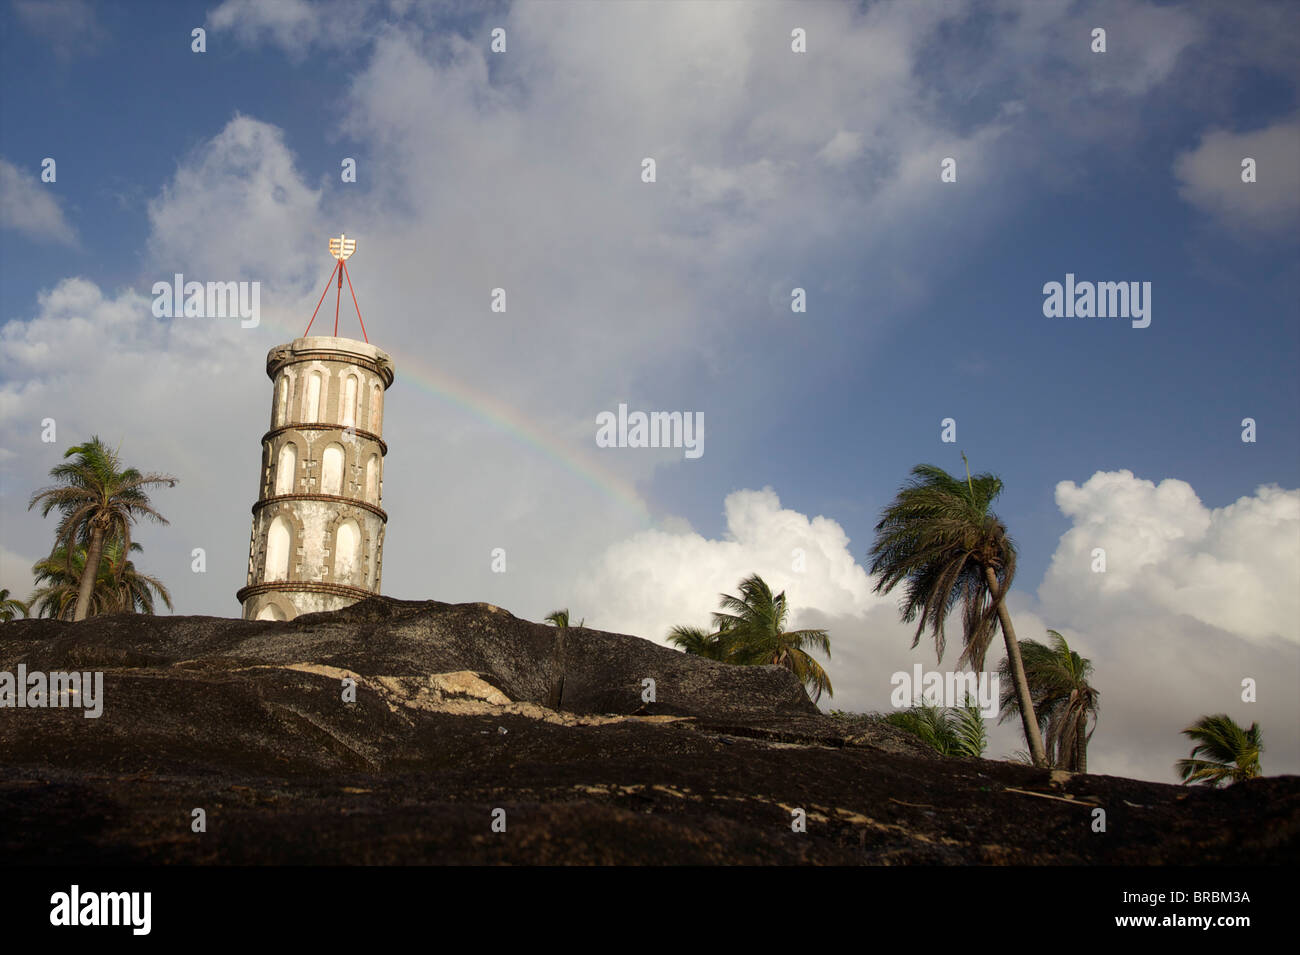 The Dreyfus tower in Kuru, French Guiana Stock Photo